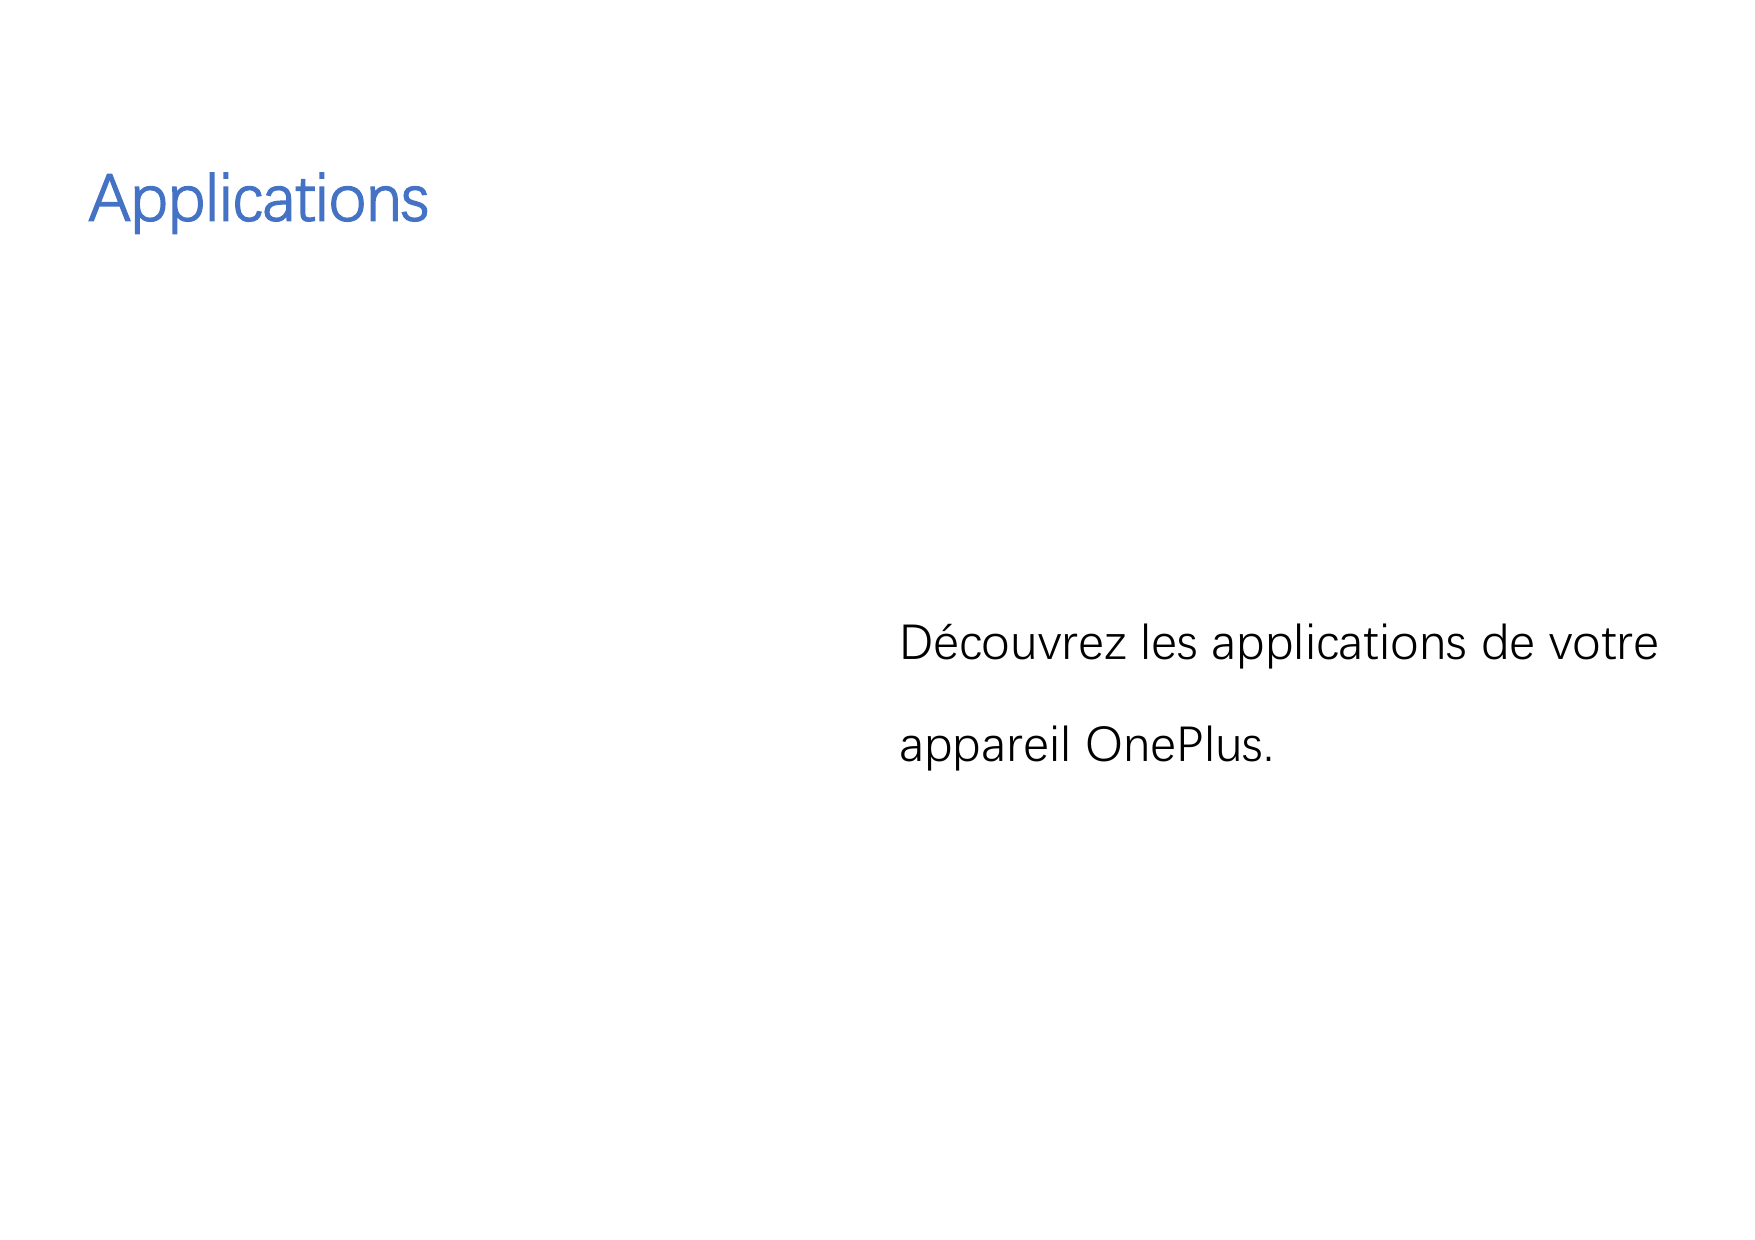 ApplicationsDécouvrez les applications de votreappareil OnePlus.